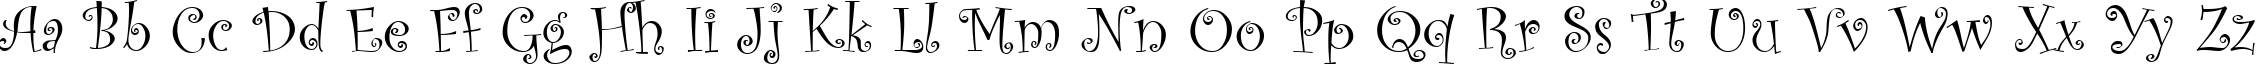 Пример написания английского алфавита шрифтом Curlz MT